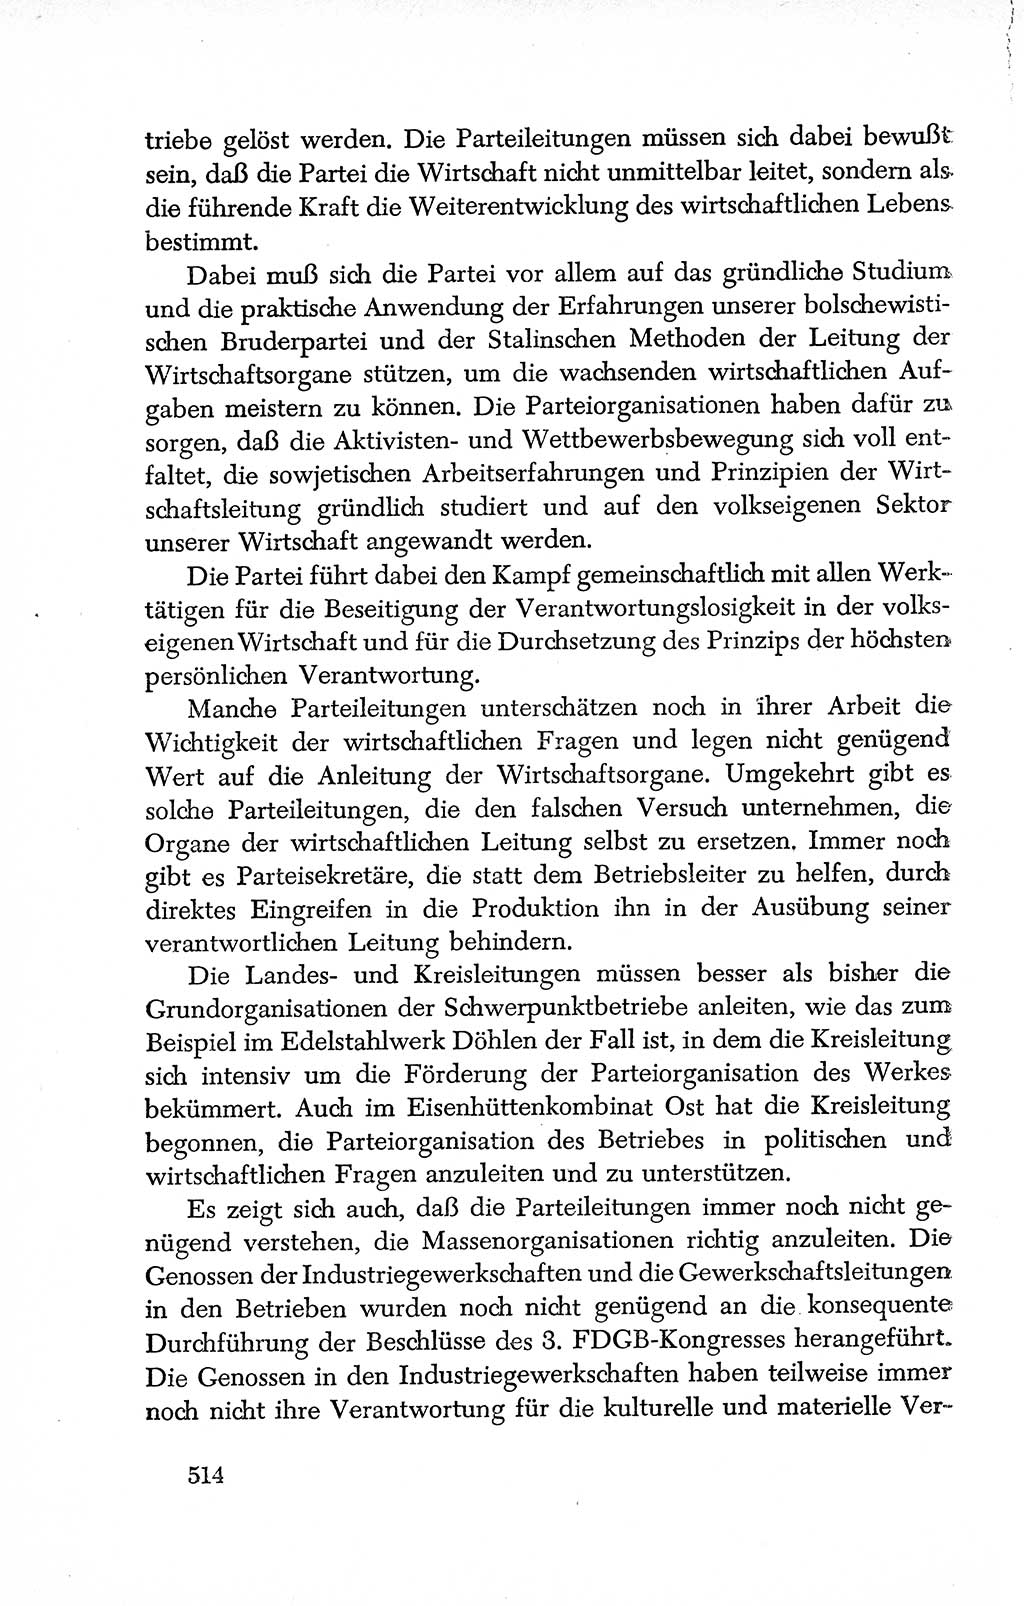 Dokumente der Sozialistischen Einheitspartei Deutschlands (SED) [Deutsche Demokratische Republik (DDR)] 1950-1952, Seite 514 (Dok. SED DDR 1950-1952, S. 514)